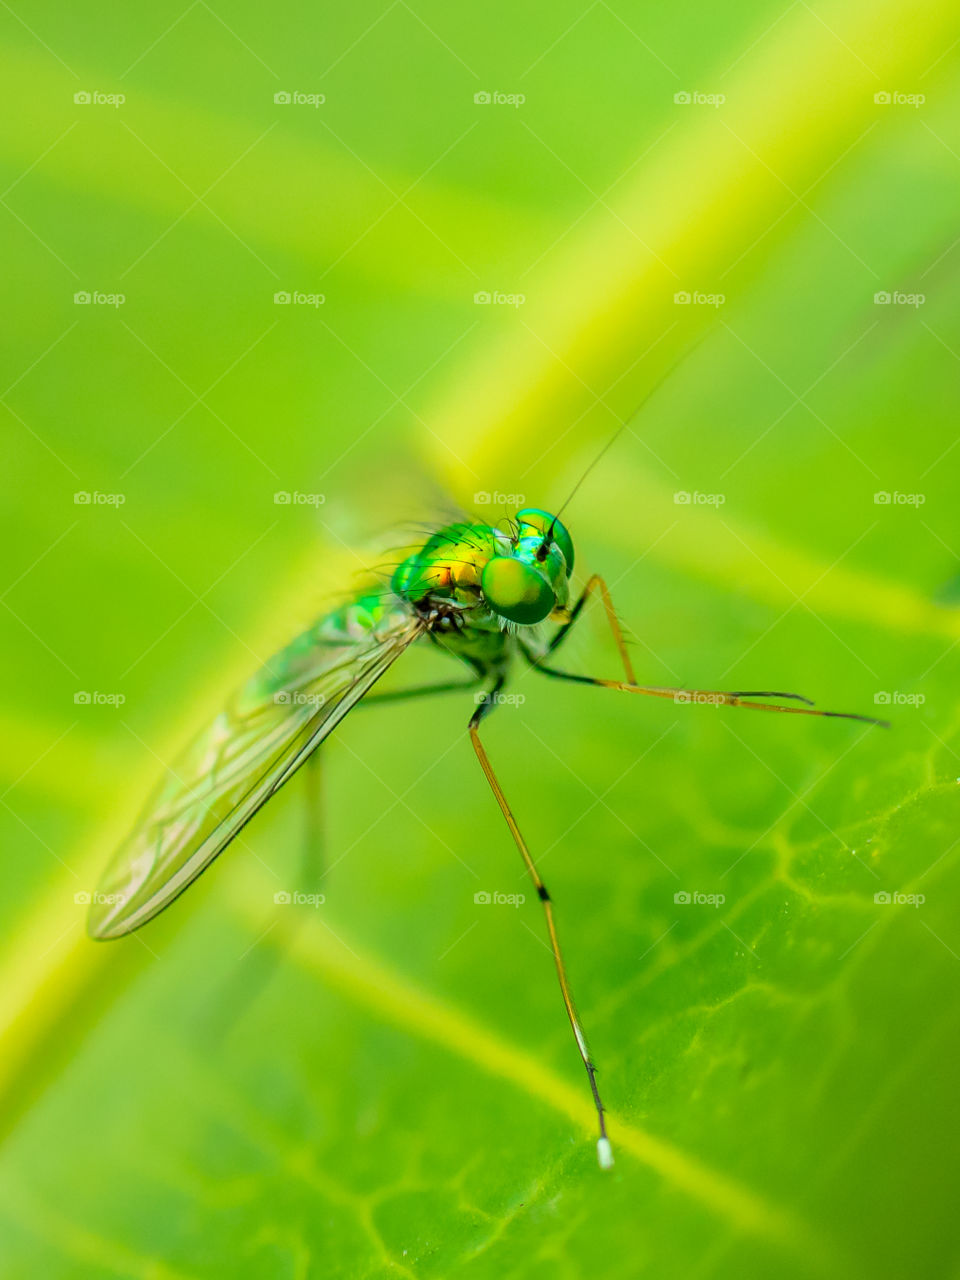 The long-legged fly